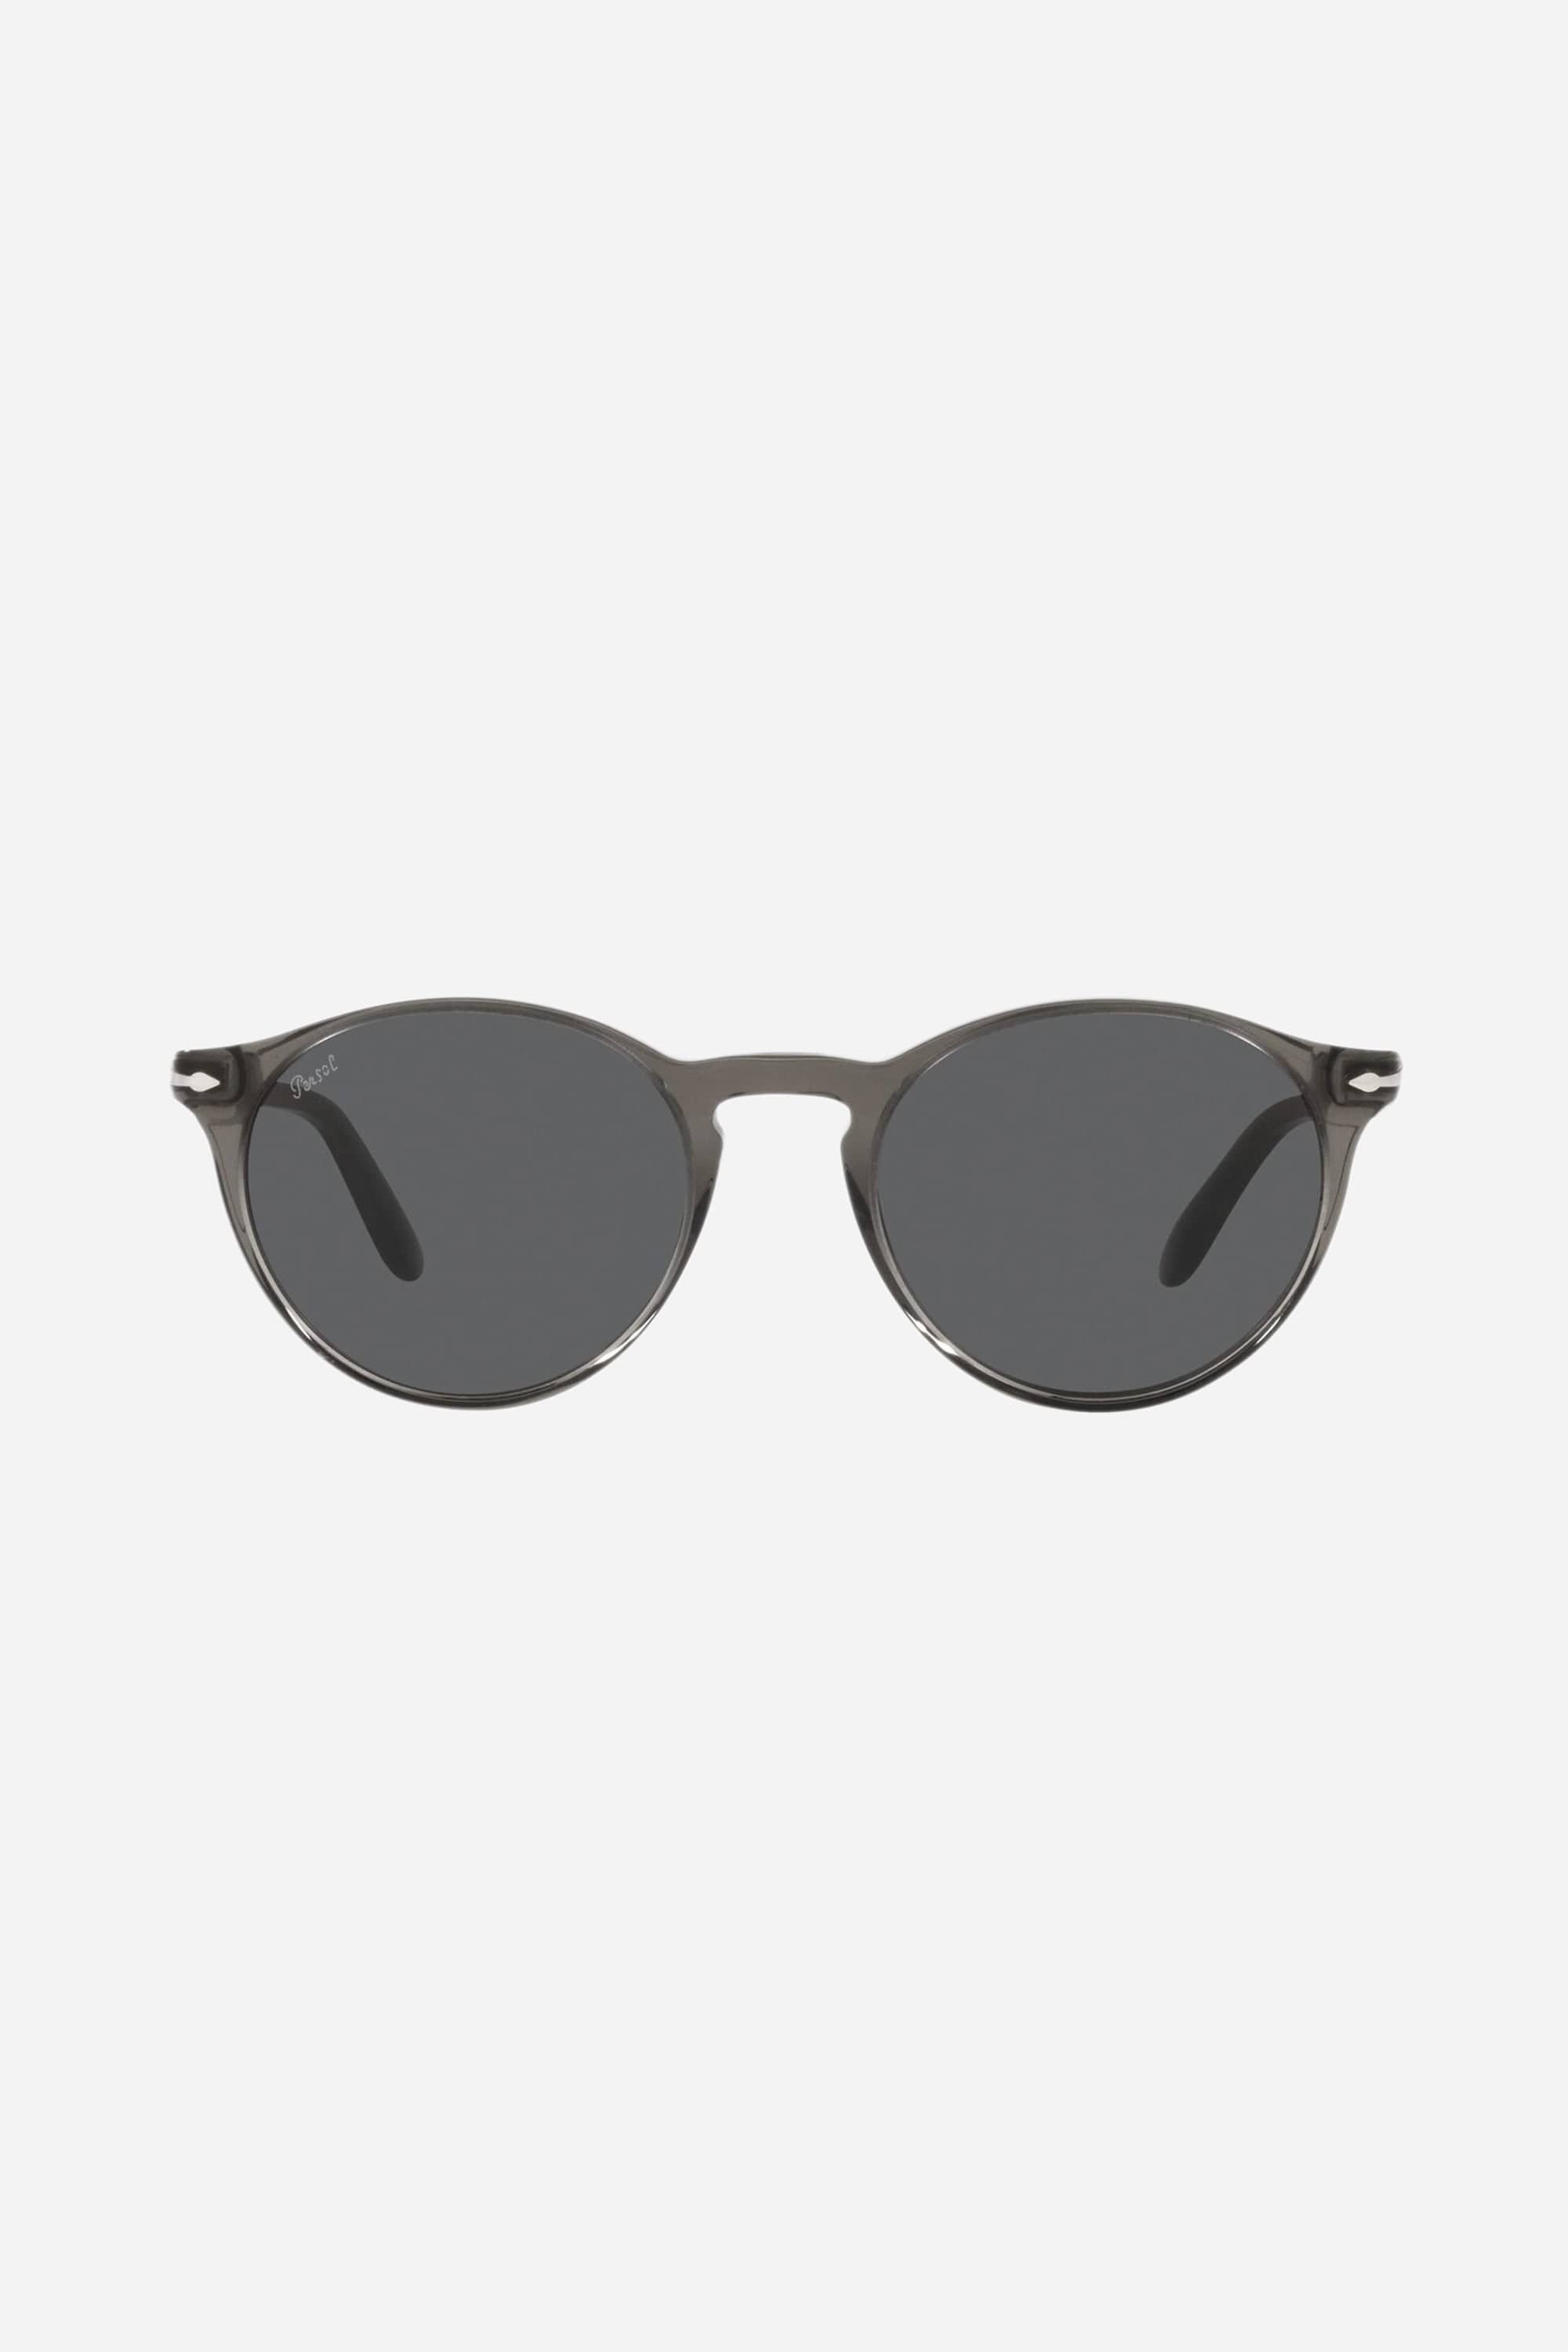 Persol round classic grey sunglasses - Eyewear Club